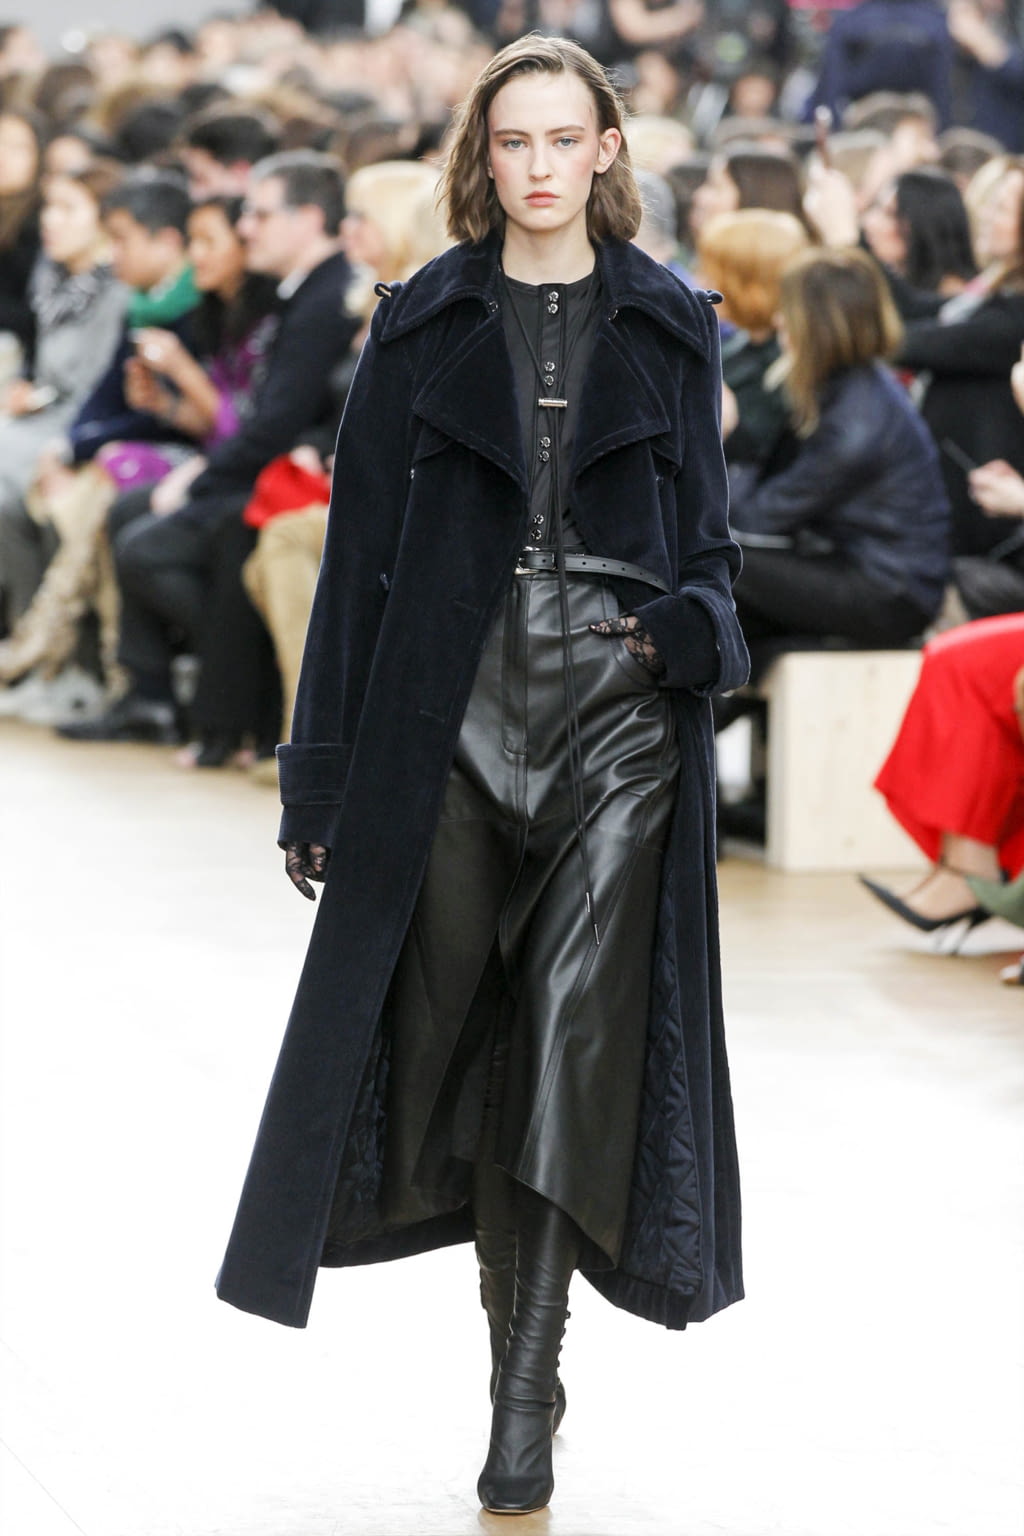 Nina Ricci F/W 17 womenswear #17 - Tagwalk: The Fashion Search Engine